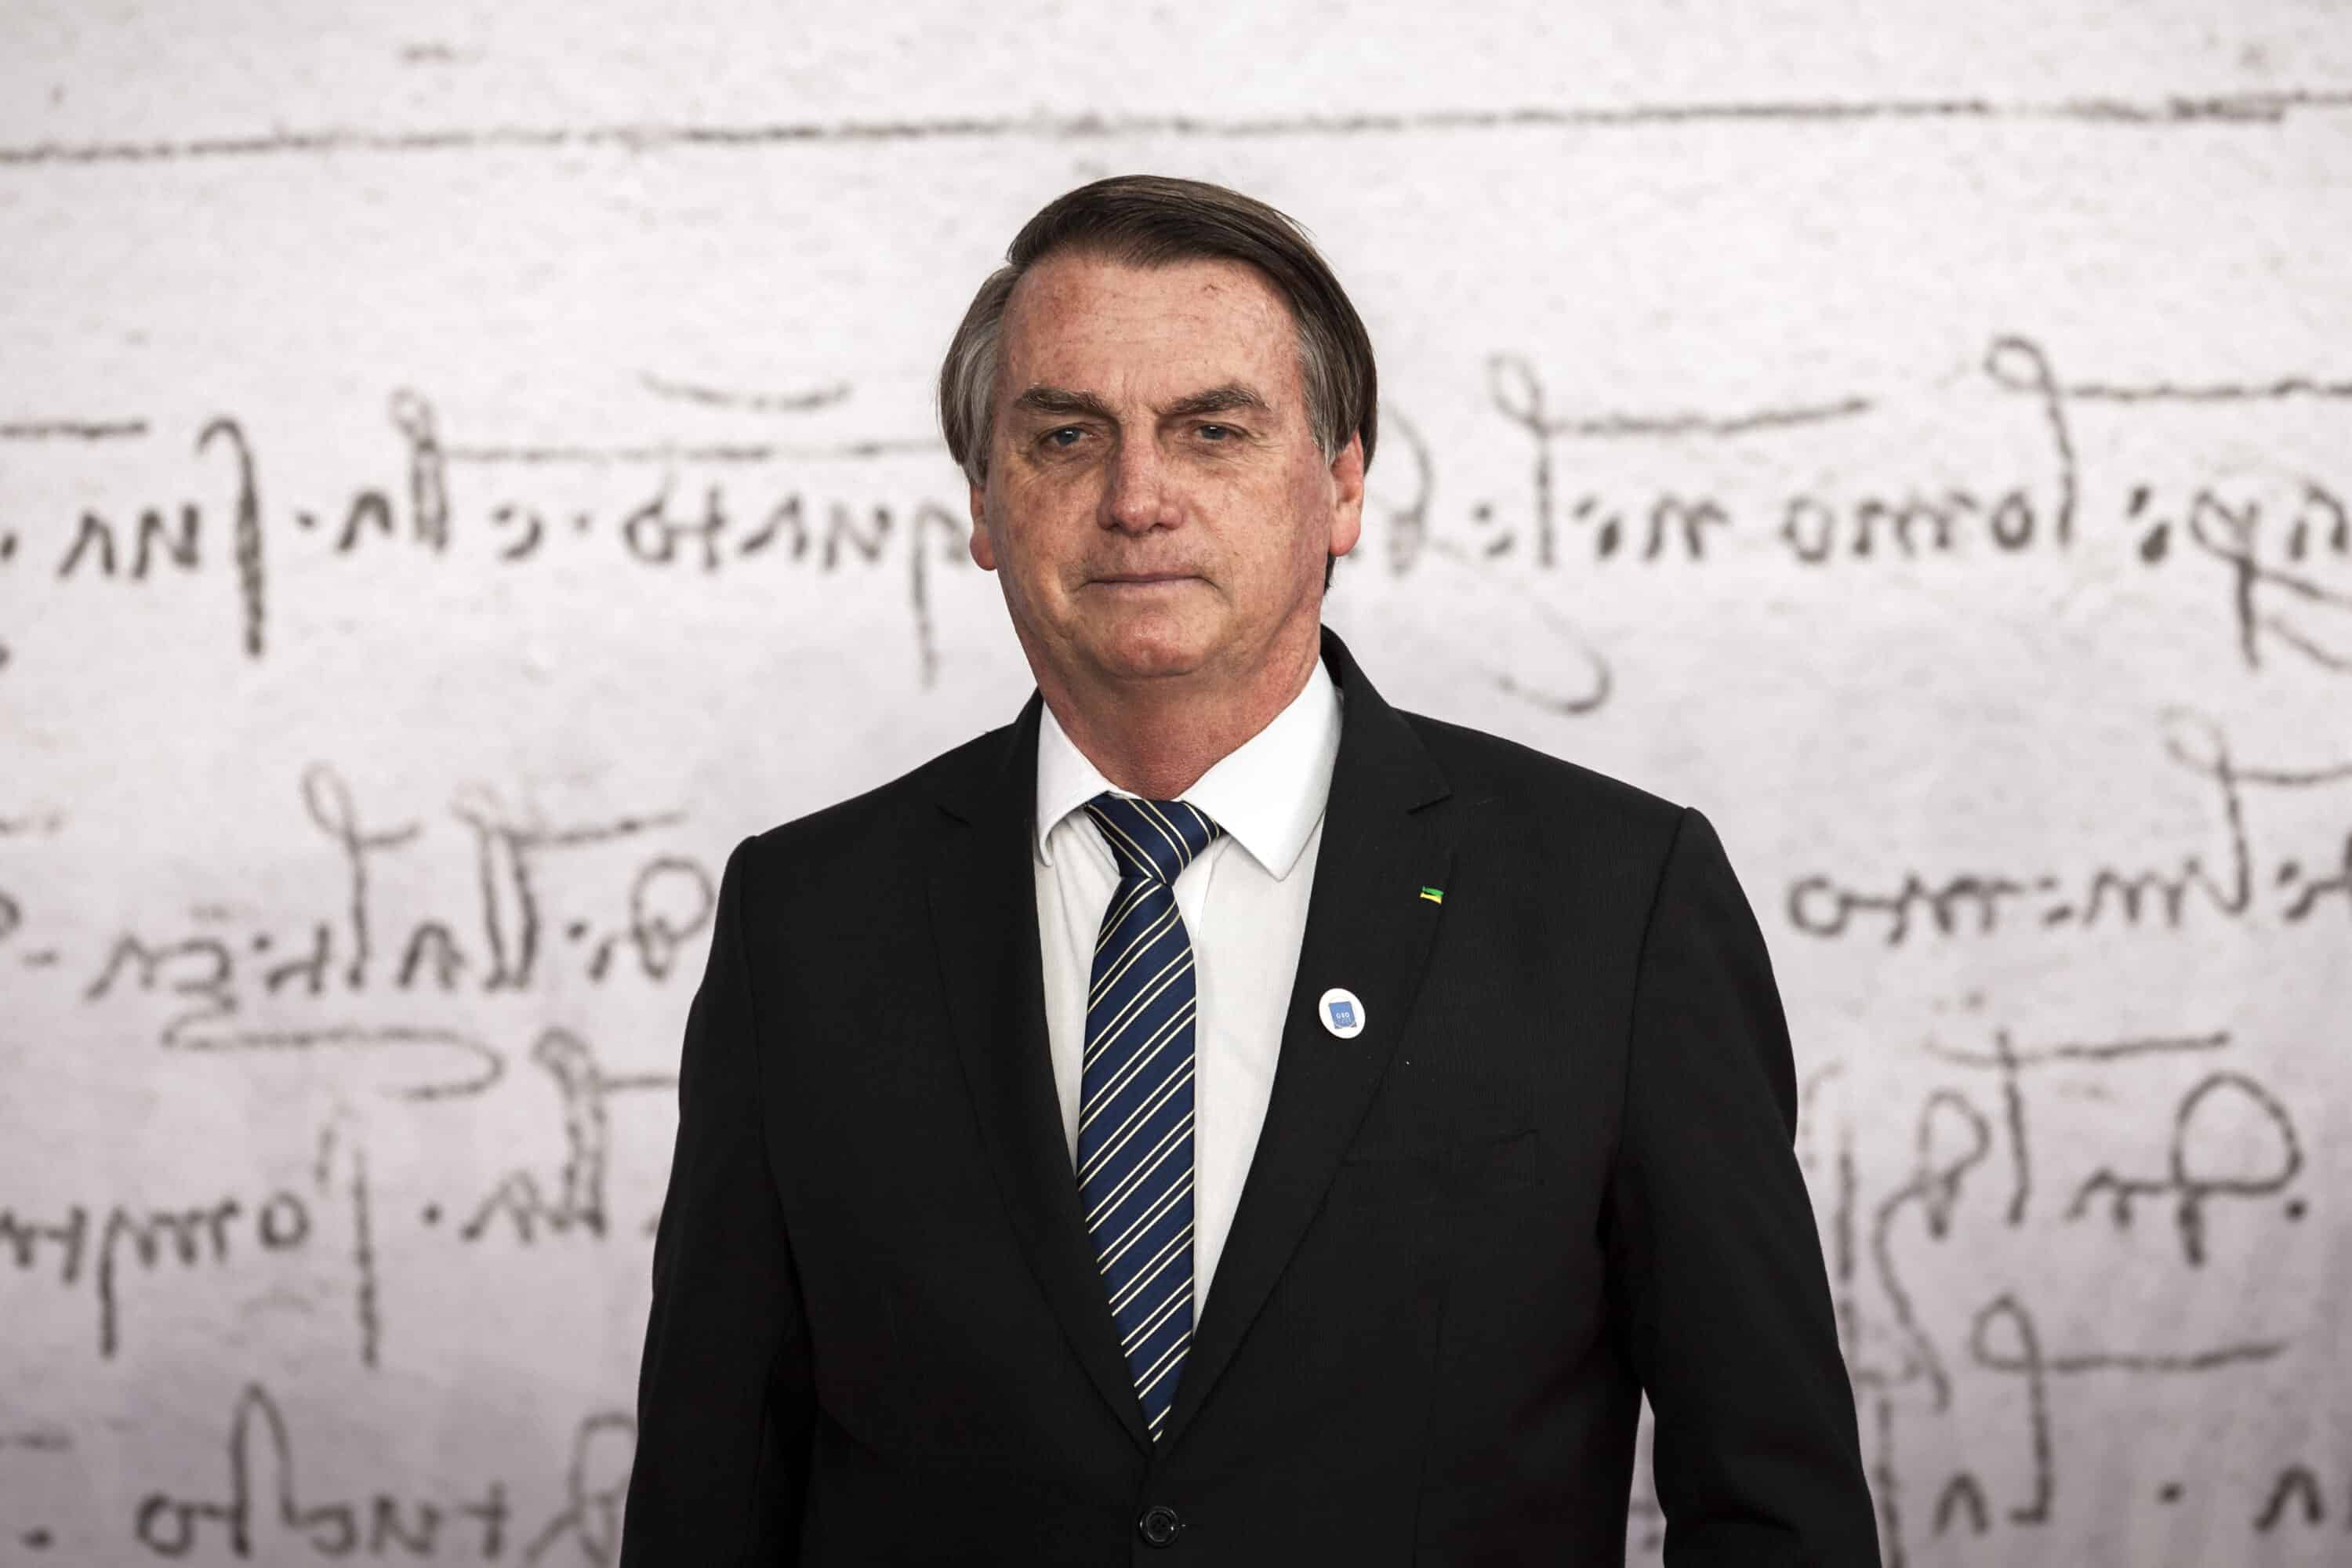 Bolsonaro condannato per abuso di potere: sarà ineleggibile per 8 anni